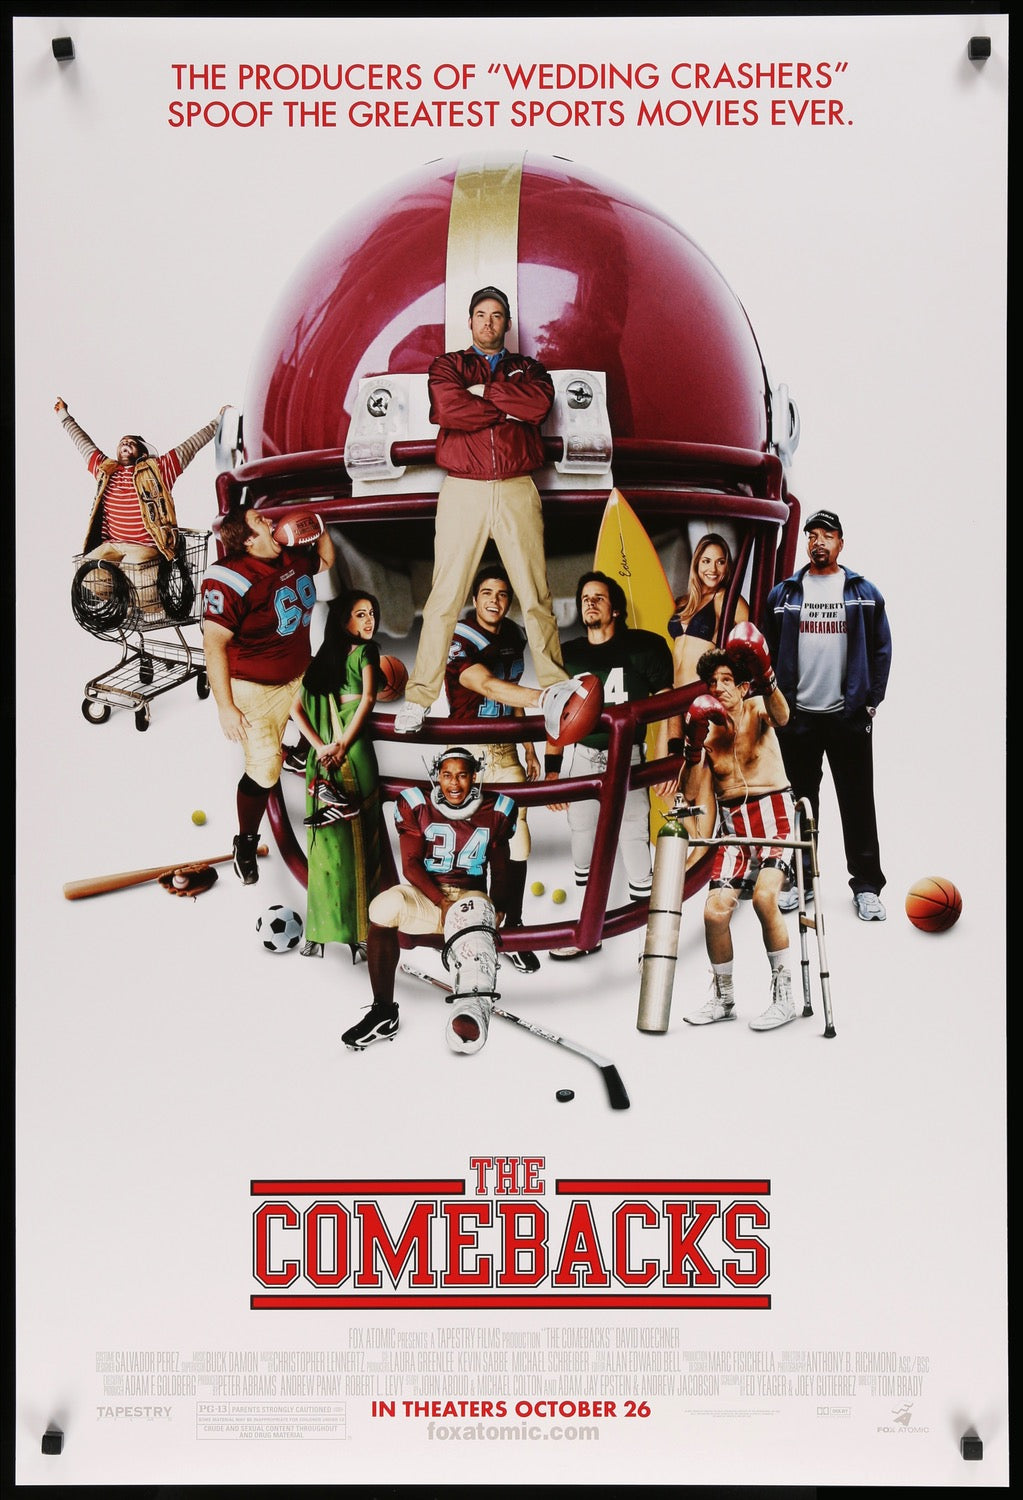 Comebacks (2007) original movie poster for sale at Original Film Art